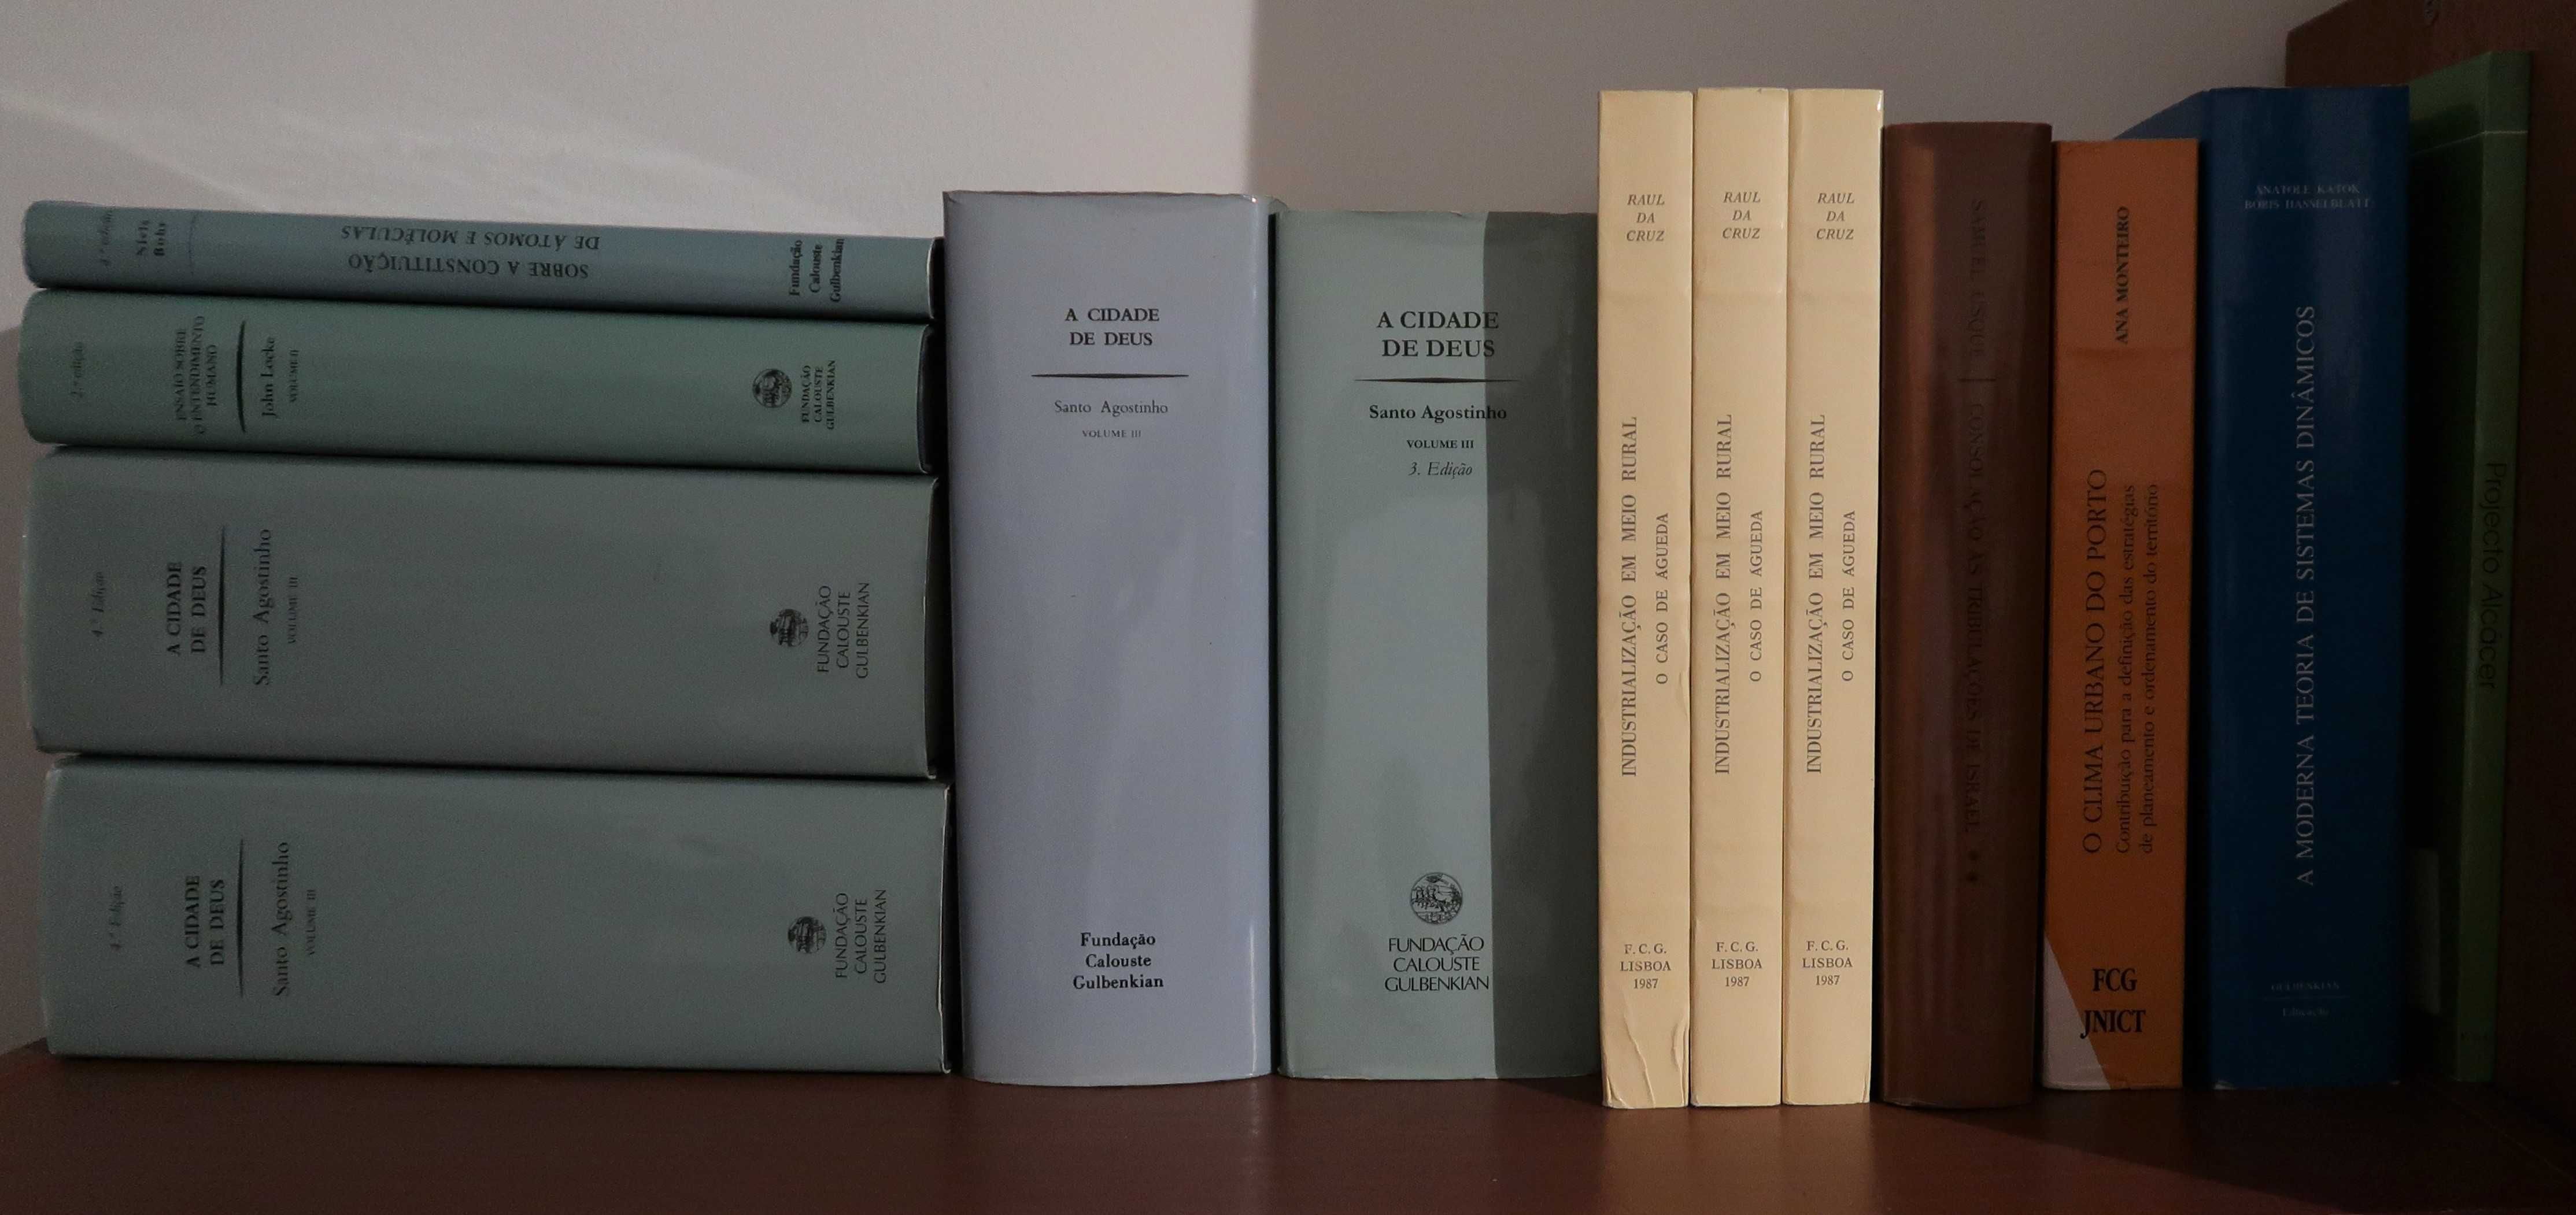 Livros Técnicos Fundação Calouste Gulbenkian, cada